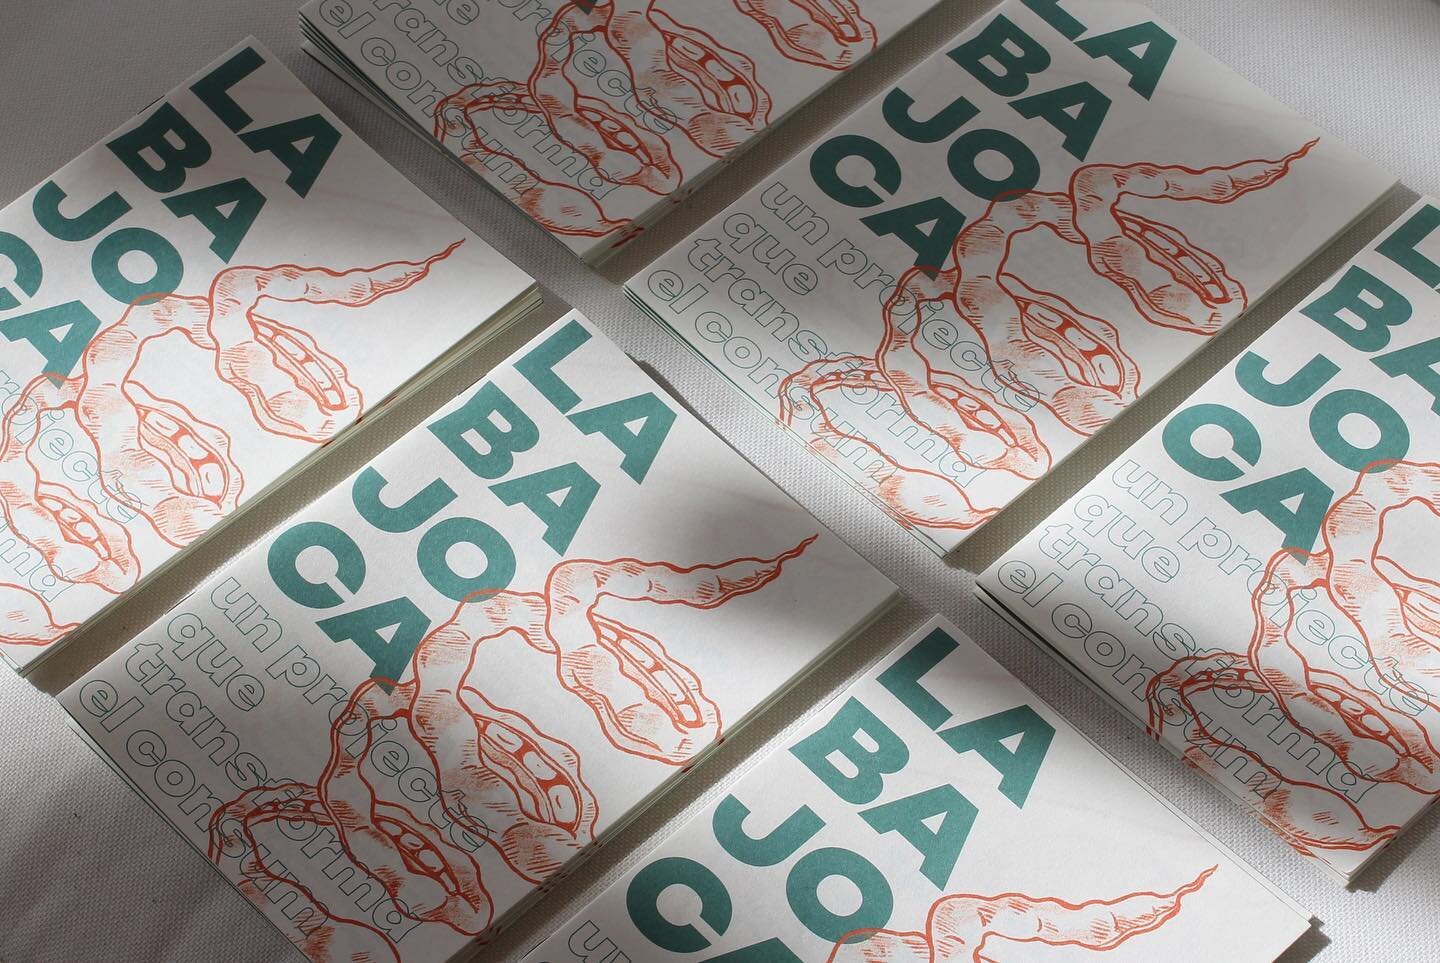 Revista per @grupconsumlabajoca 🫛 un projecte que transforma el consum💫

#revista #design #illustration